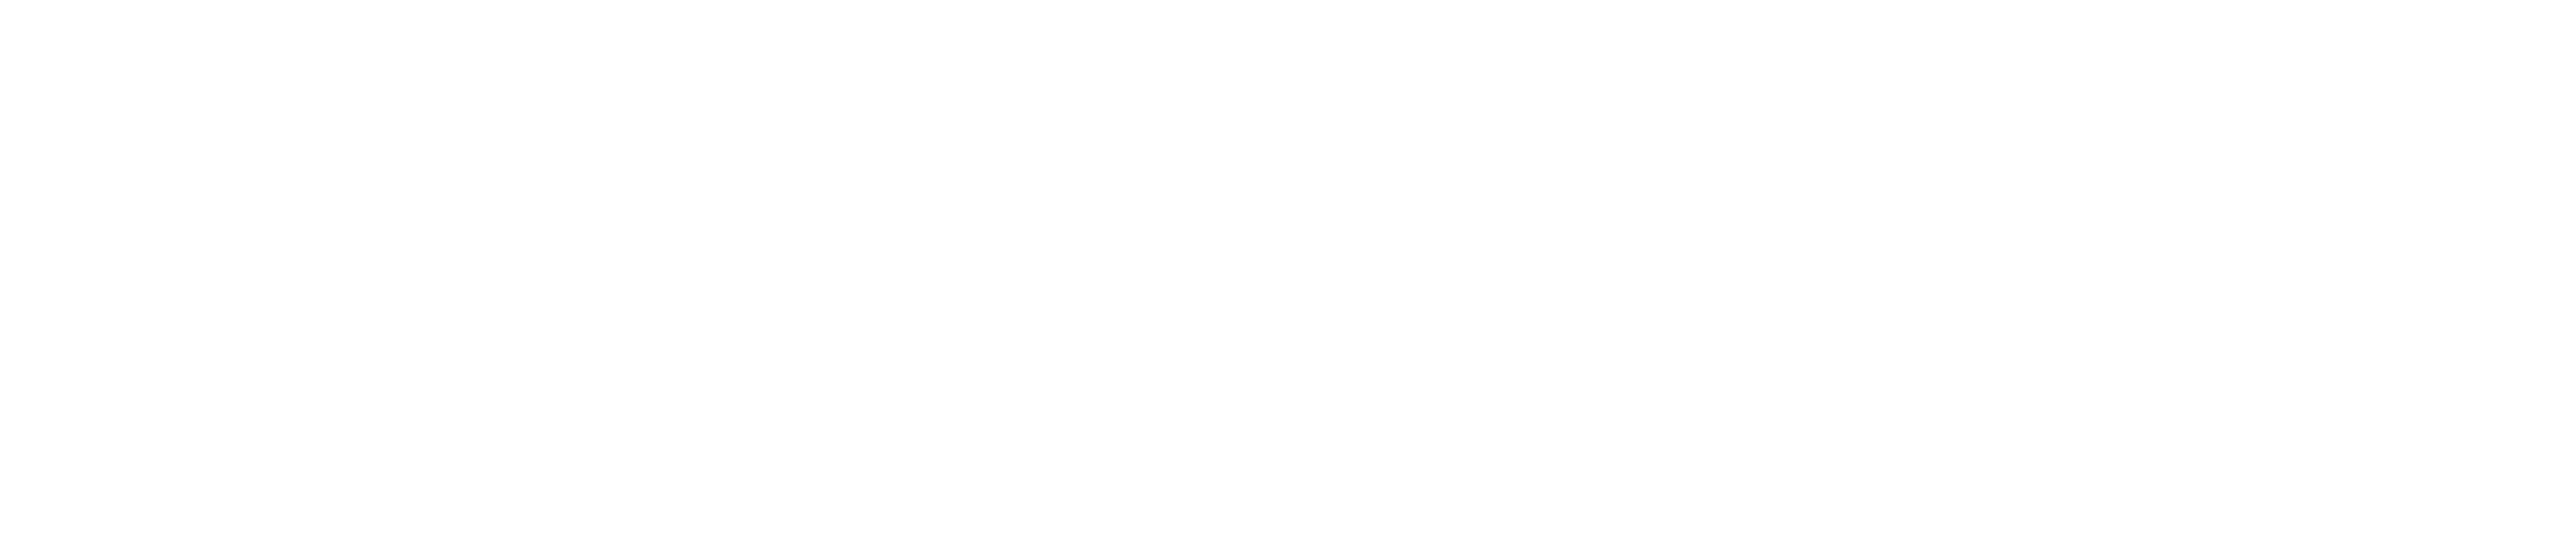 Twin Peaks: Fire Walk with Me logo